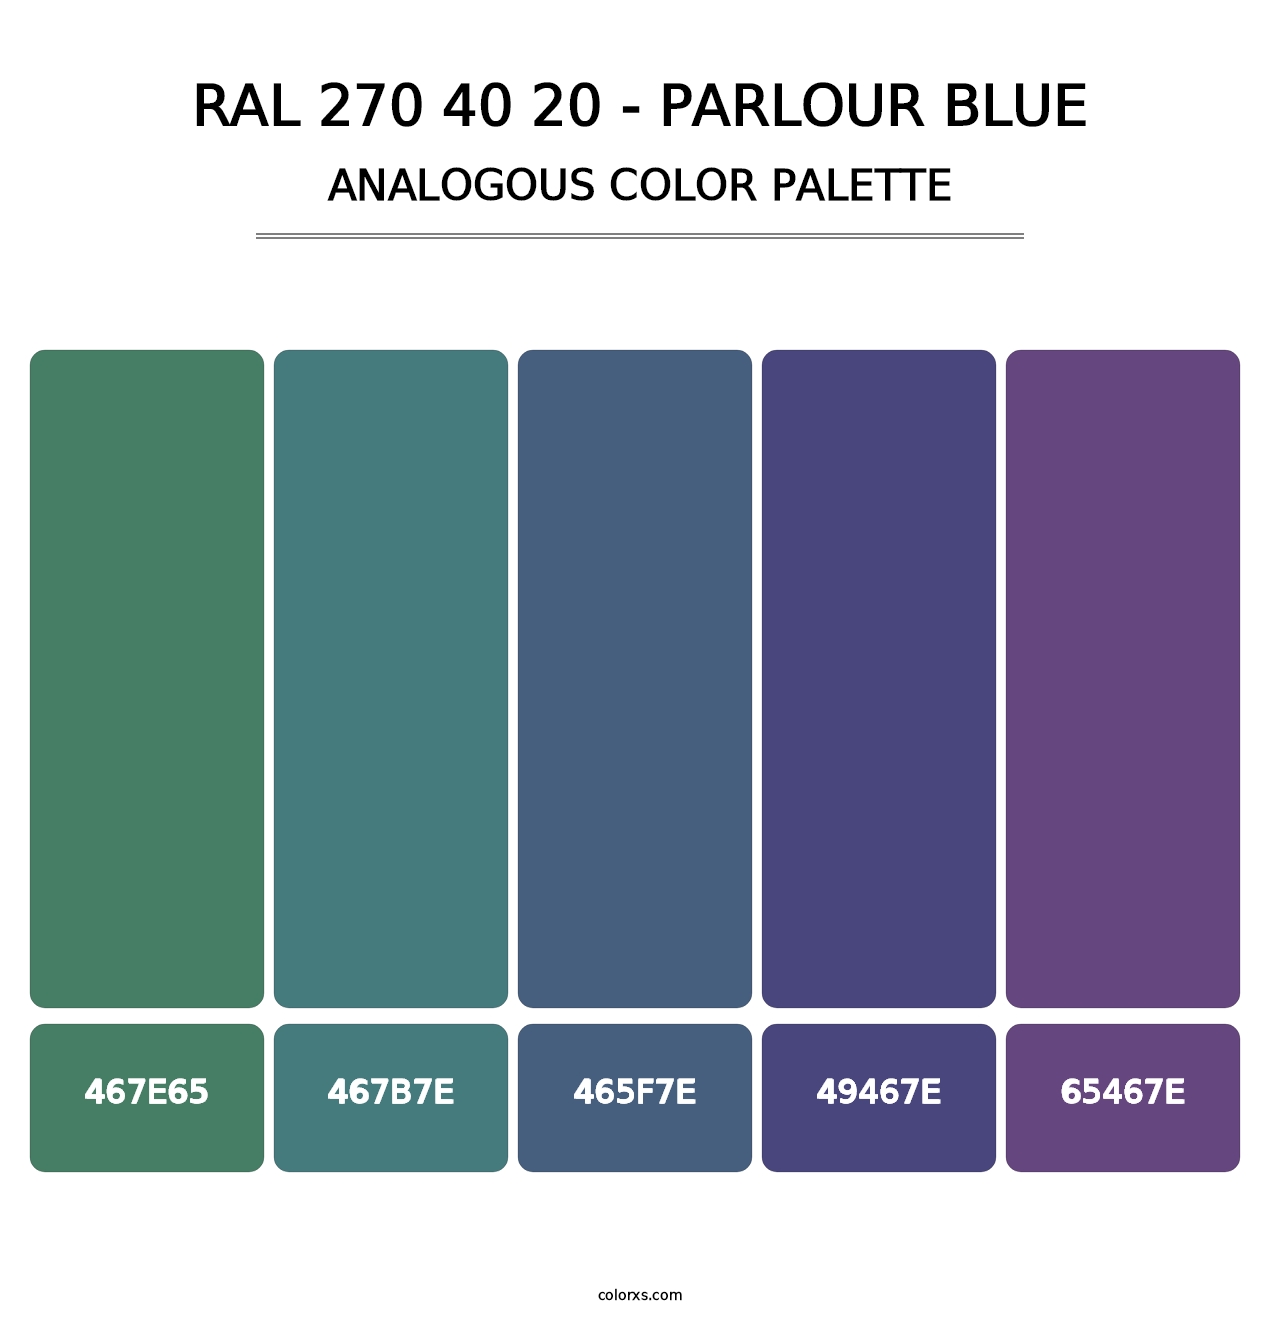 RAL 270 40 20 - Parlour Blue - Analogous Color Palette